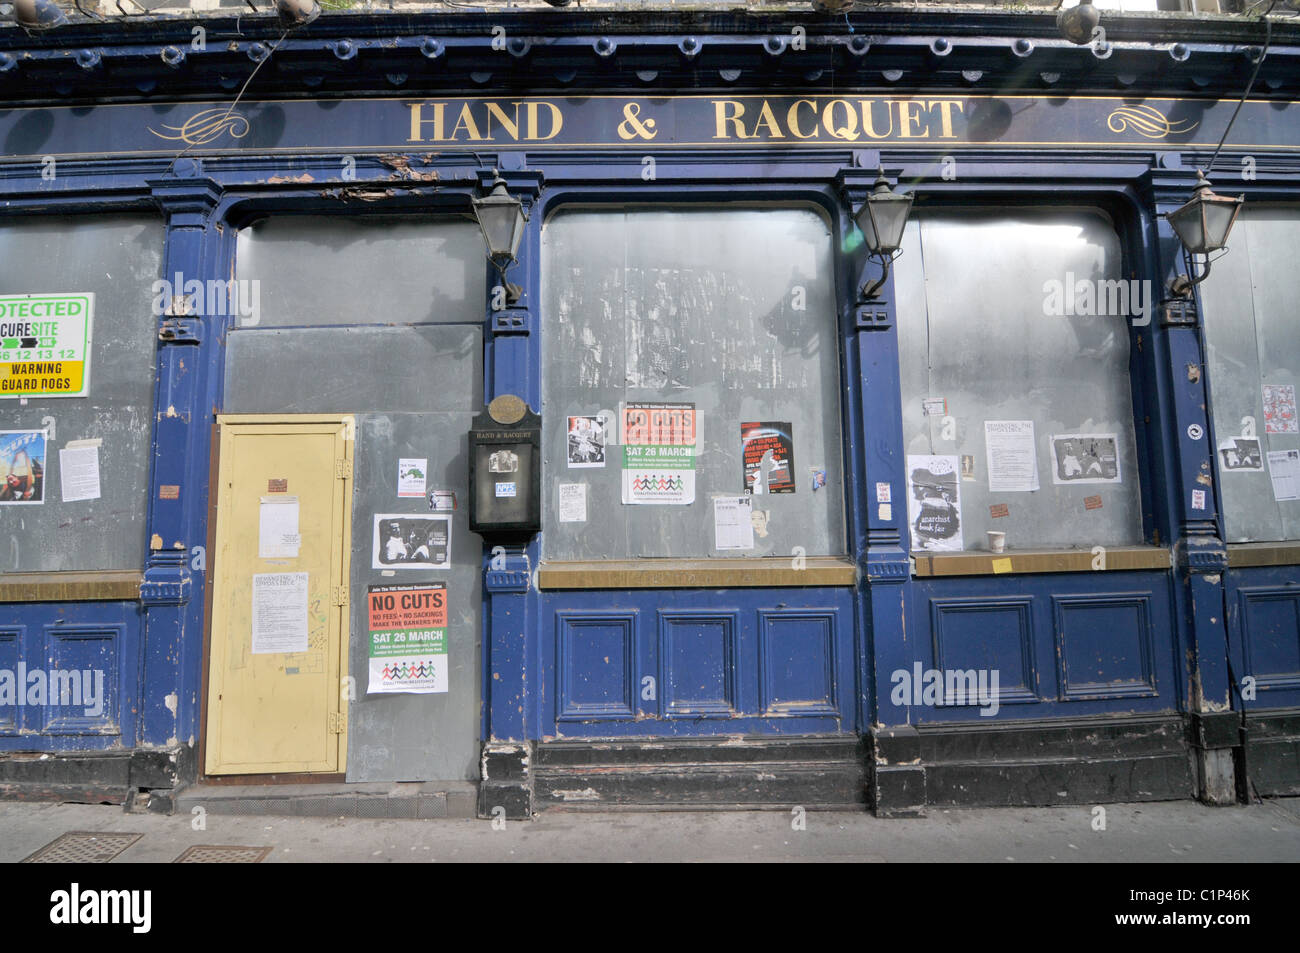 Hand & Raquet Pub Leicester Square London besetzten Hausbesetzer hocken Anarchisten Anarchie Aufstand alternativen Lebensstil Stockfoto